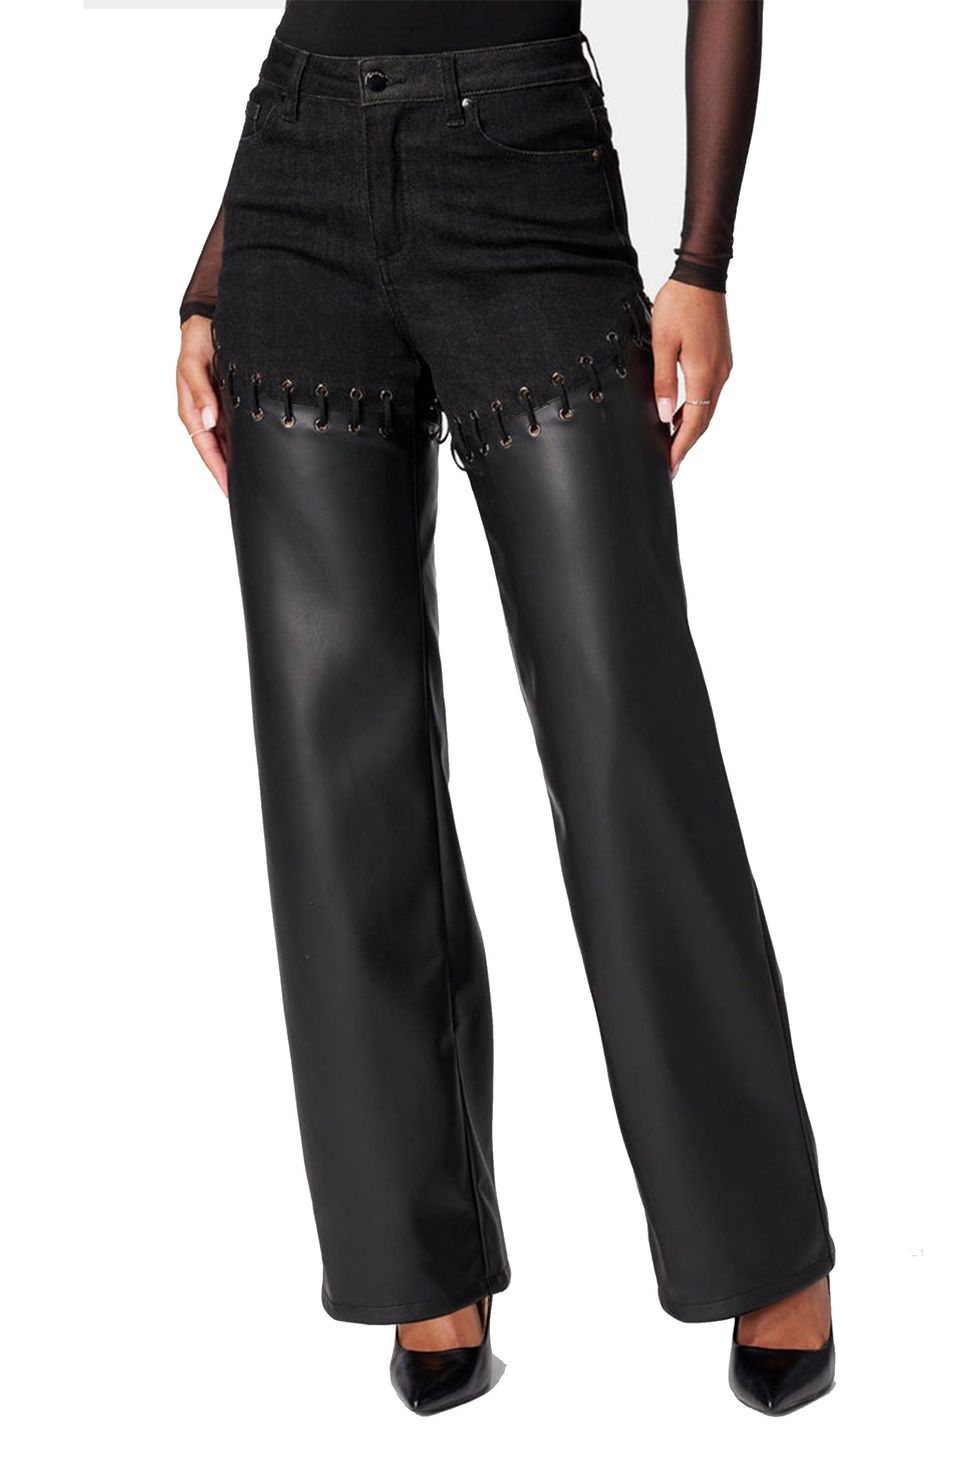 Ladies Leather Trendy Boot Cut Pant, Women's Slit Cut Pants